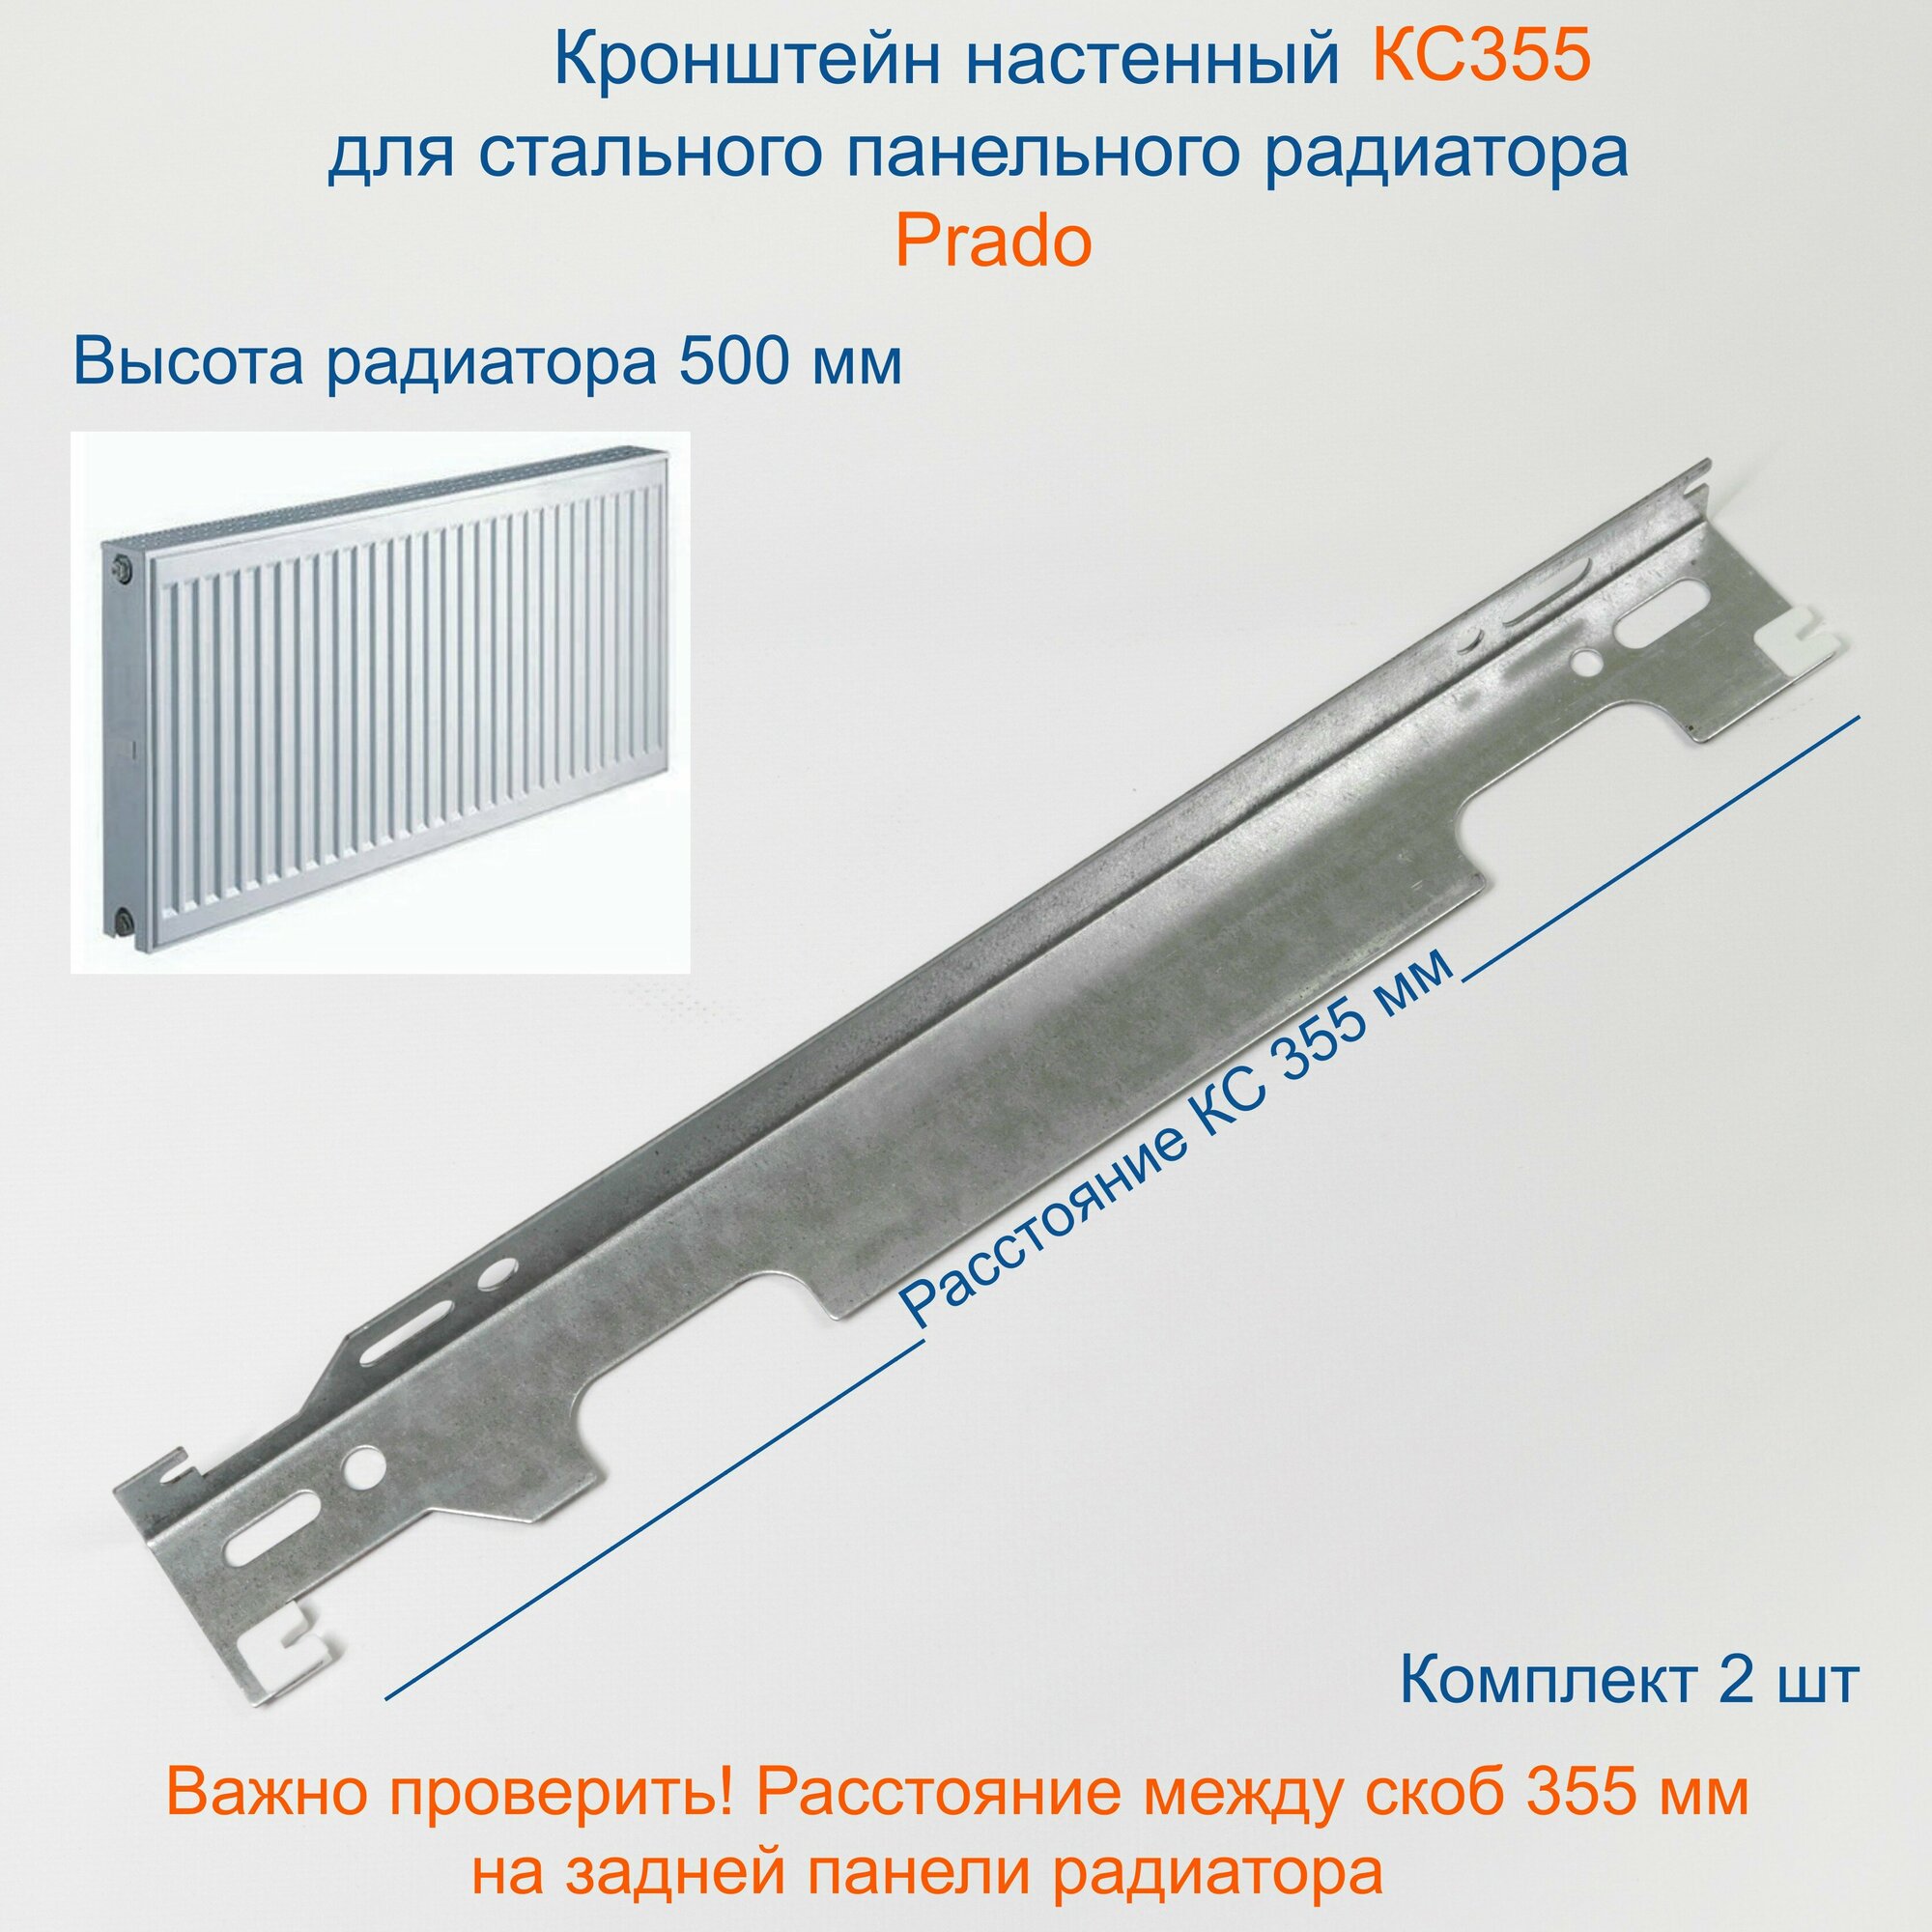 Кронштейн настенный Кайрос для стальных панельных радиаторов Прадо 500 мм (комплект 2 шт)